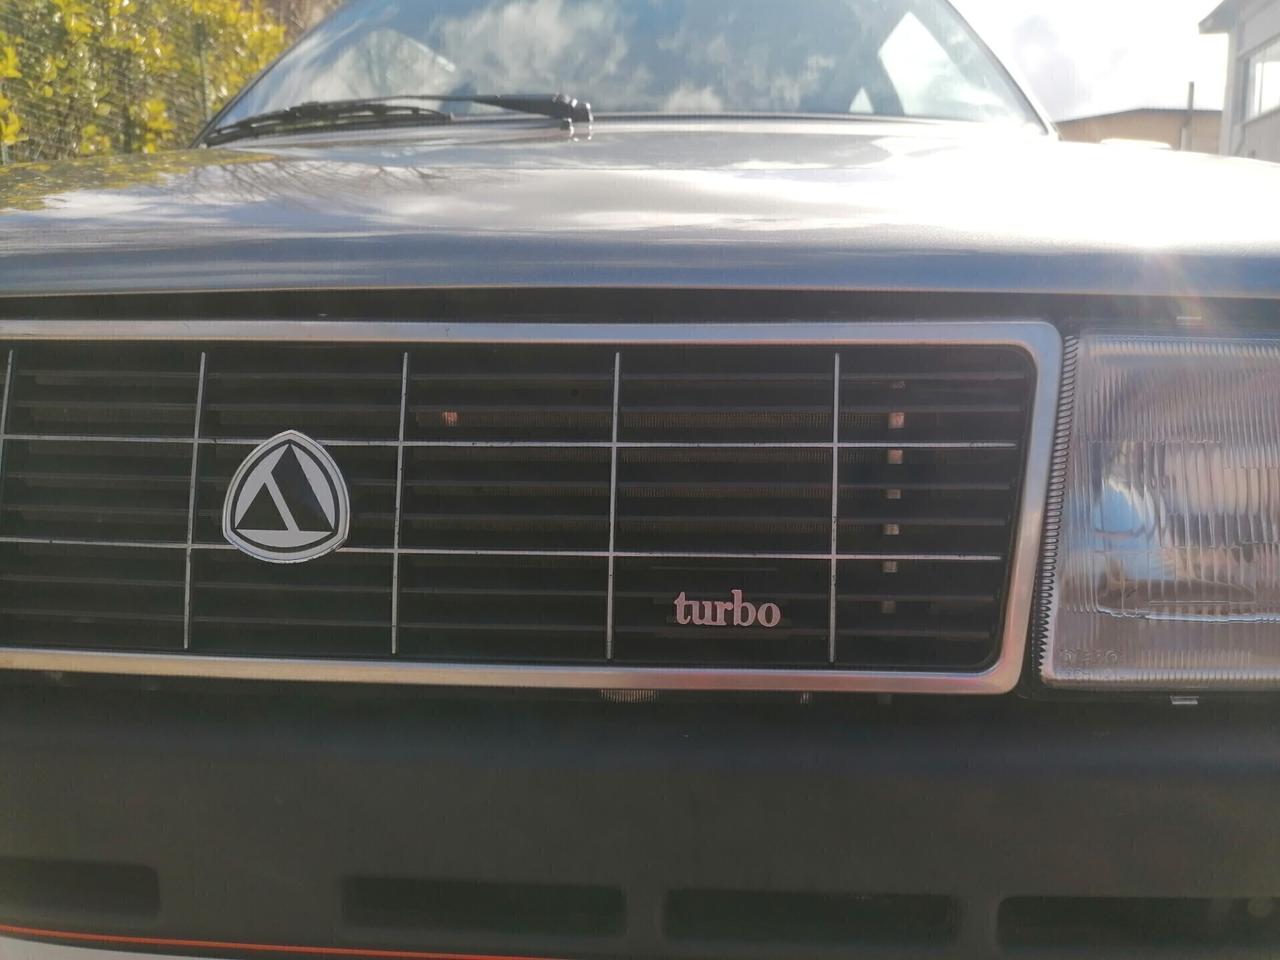 Autobianchi Y10 1.1 Turbo 1986